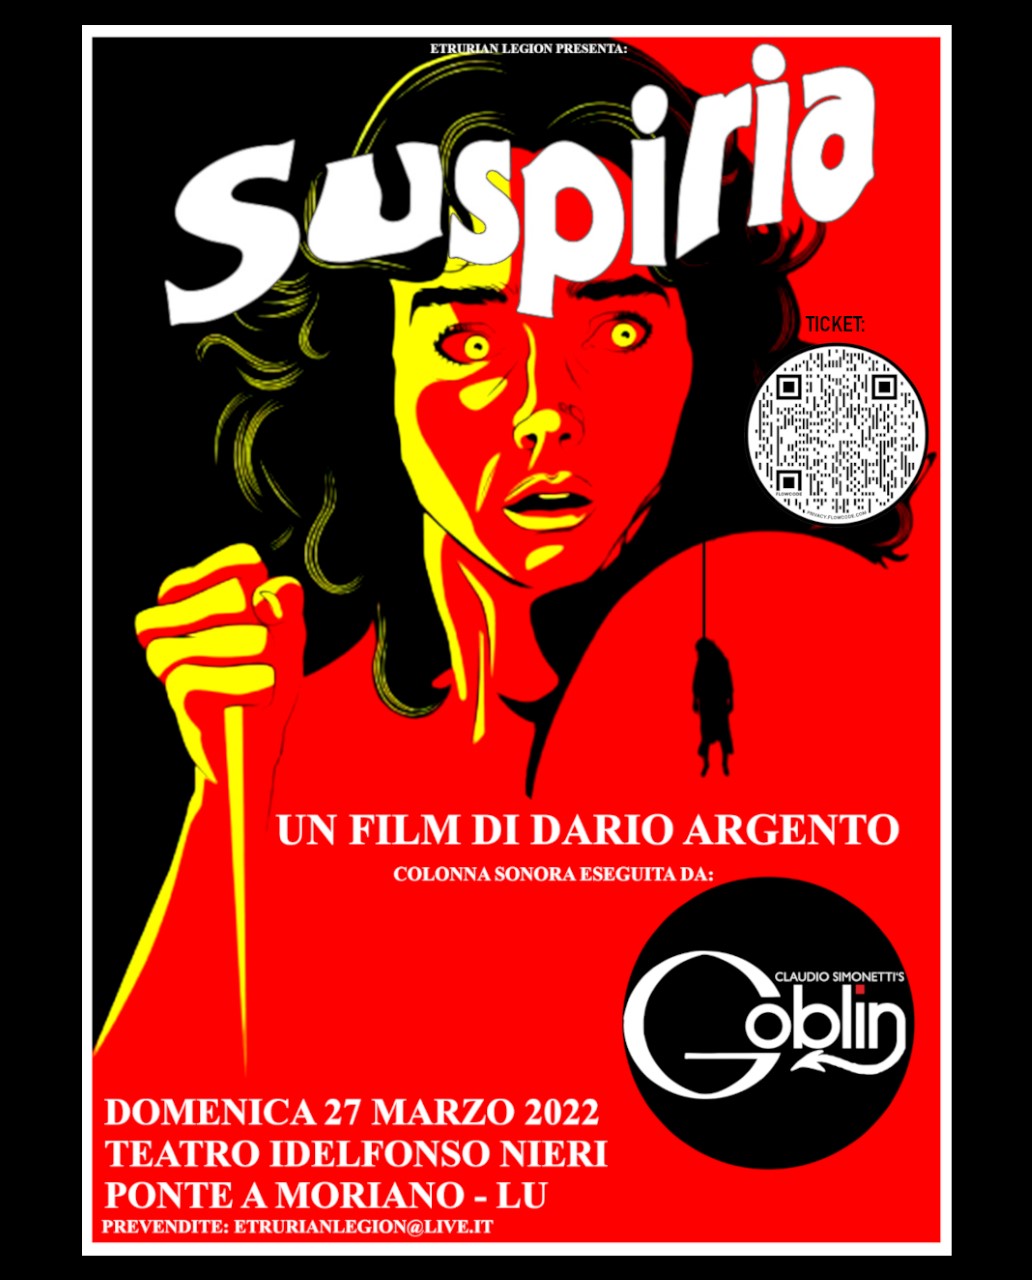 Tornano a Lucca i Goblin di Claudio Simonetti per i 45 anni di Suspiria